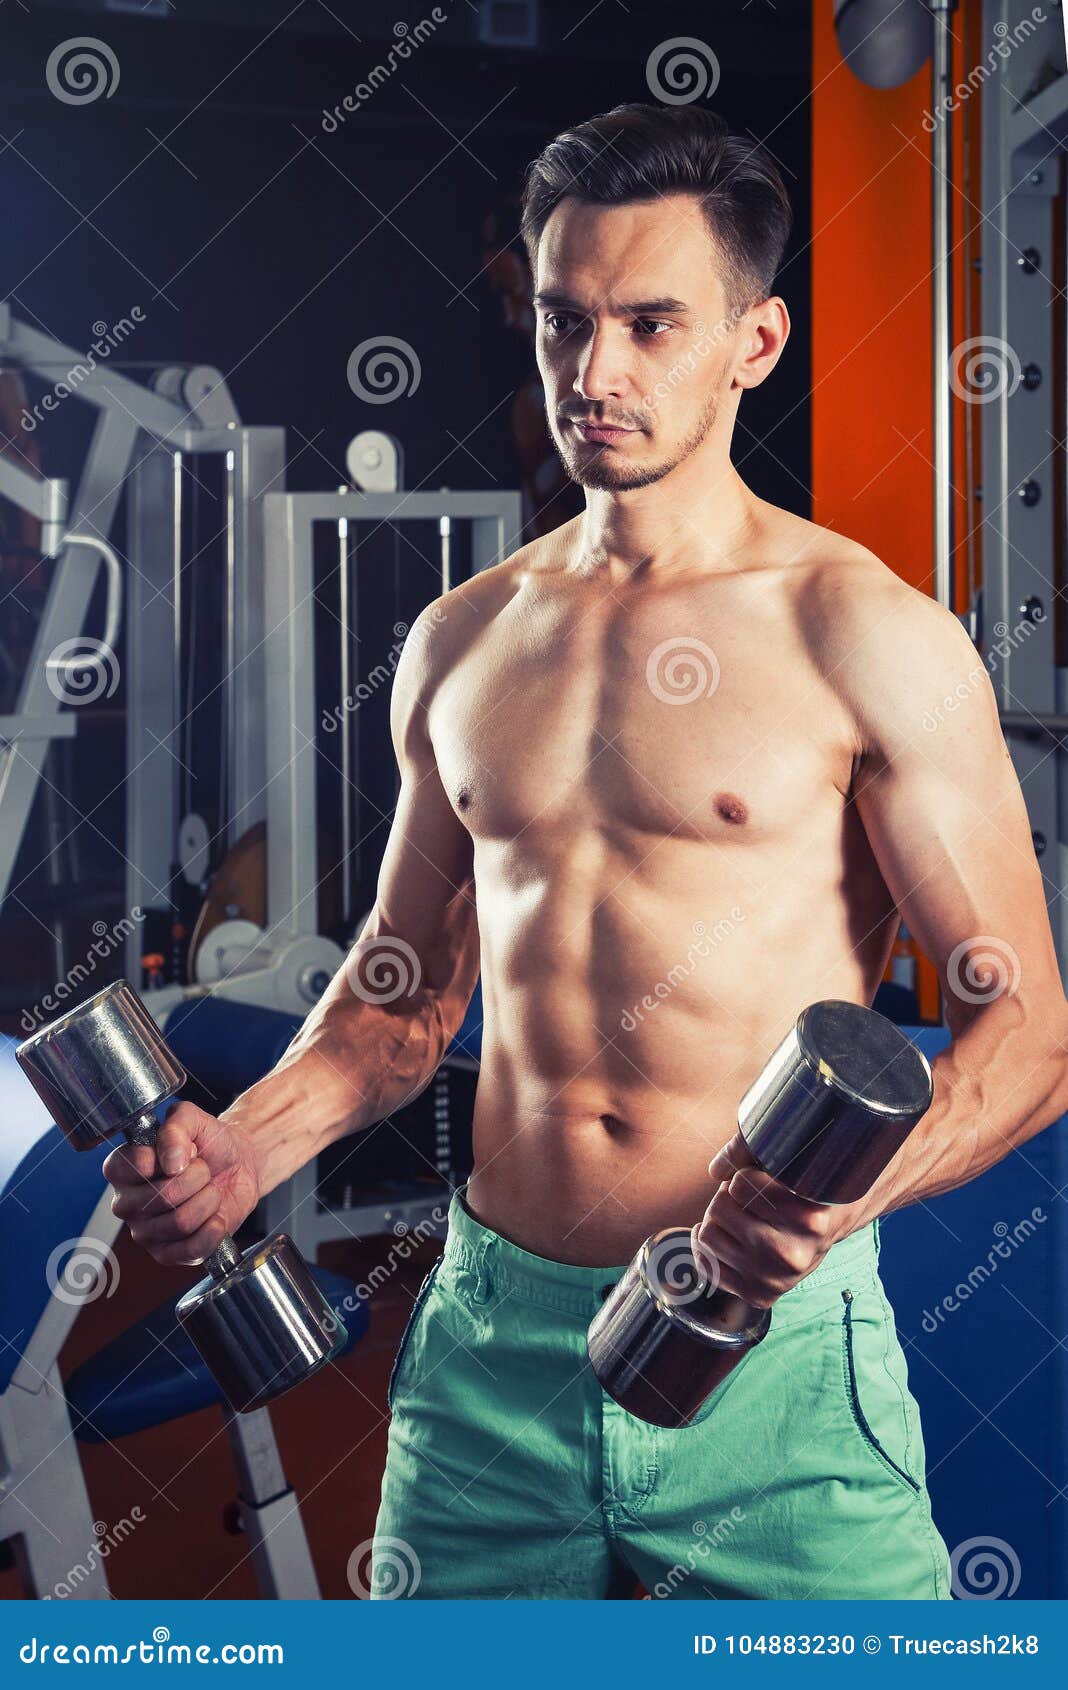 hombre-muscular-hermoso-que-se-resuelve-con-pesas-de-gimnasia-en-el-gimnasio-forma-vida-del-levantamiento-deporte-y-la-aptitud-104883230.jpg